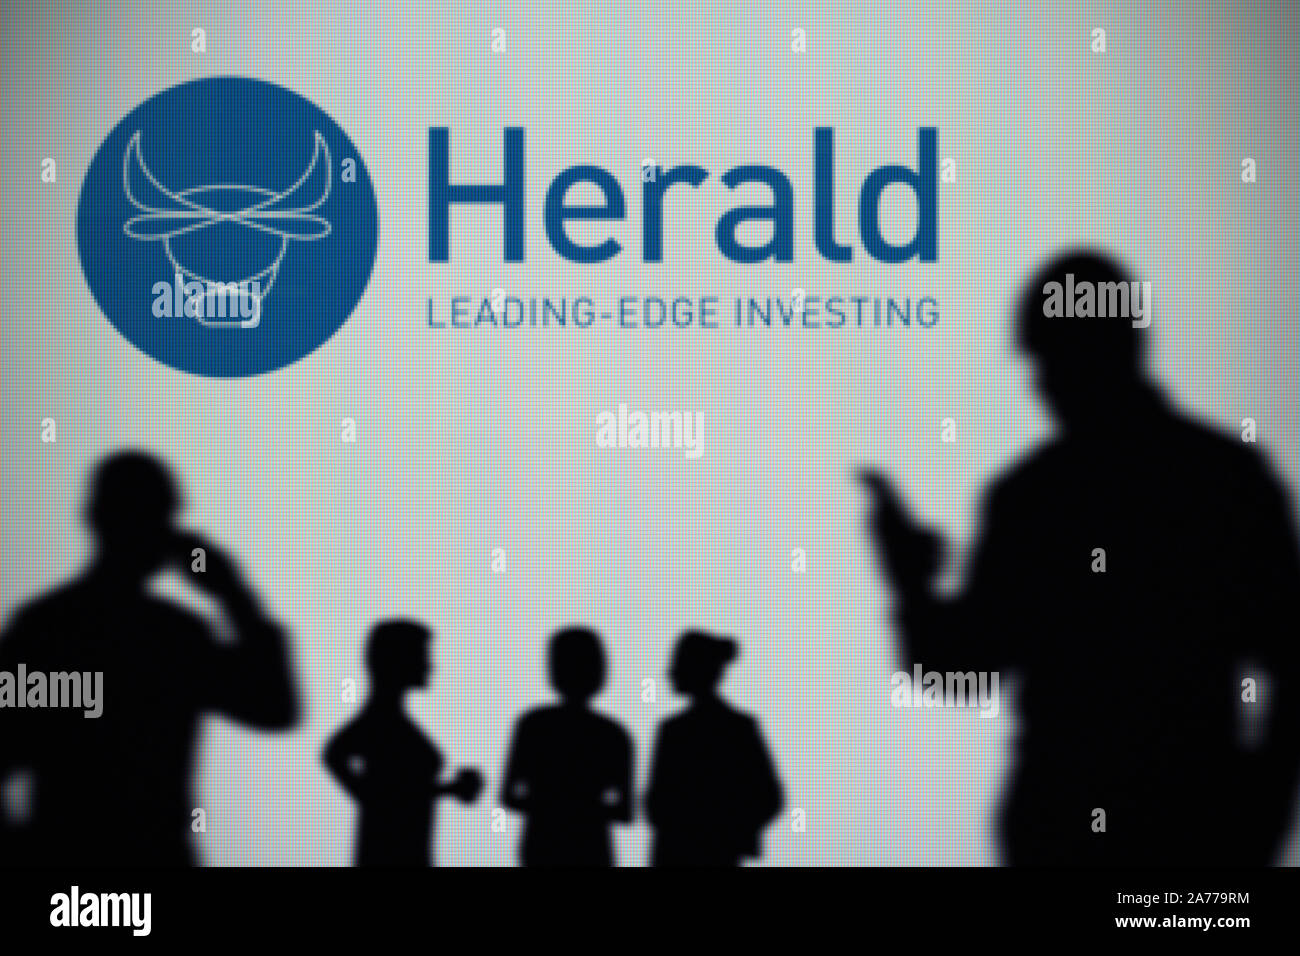 Il Herald Investment Trust logo è visibile su uno schermo a LED in background mentre si profila una persona utilizza uno smartphone (solo uso editoriale) Foto Stock